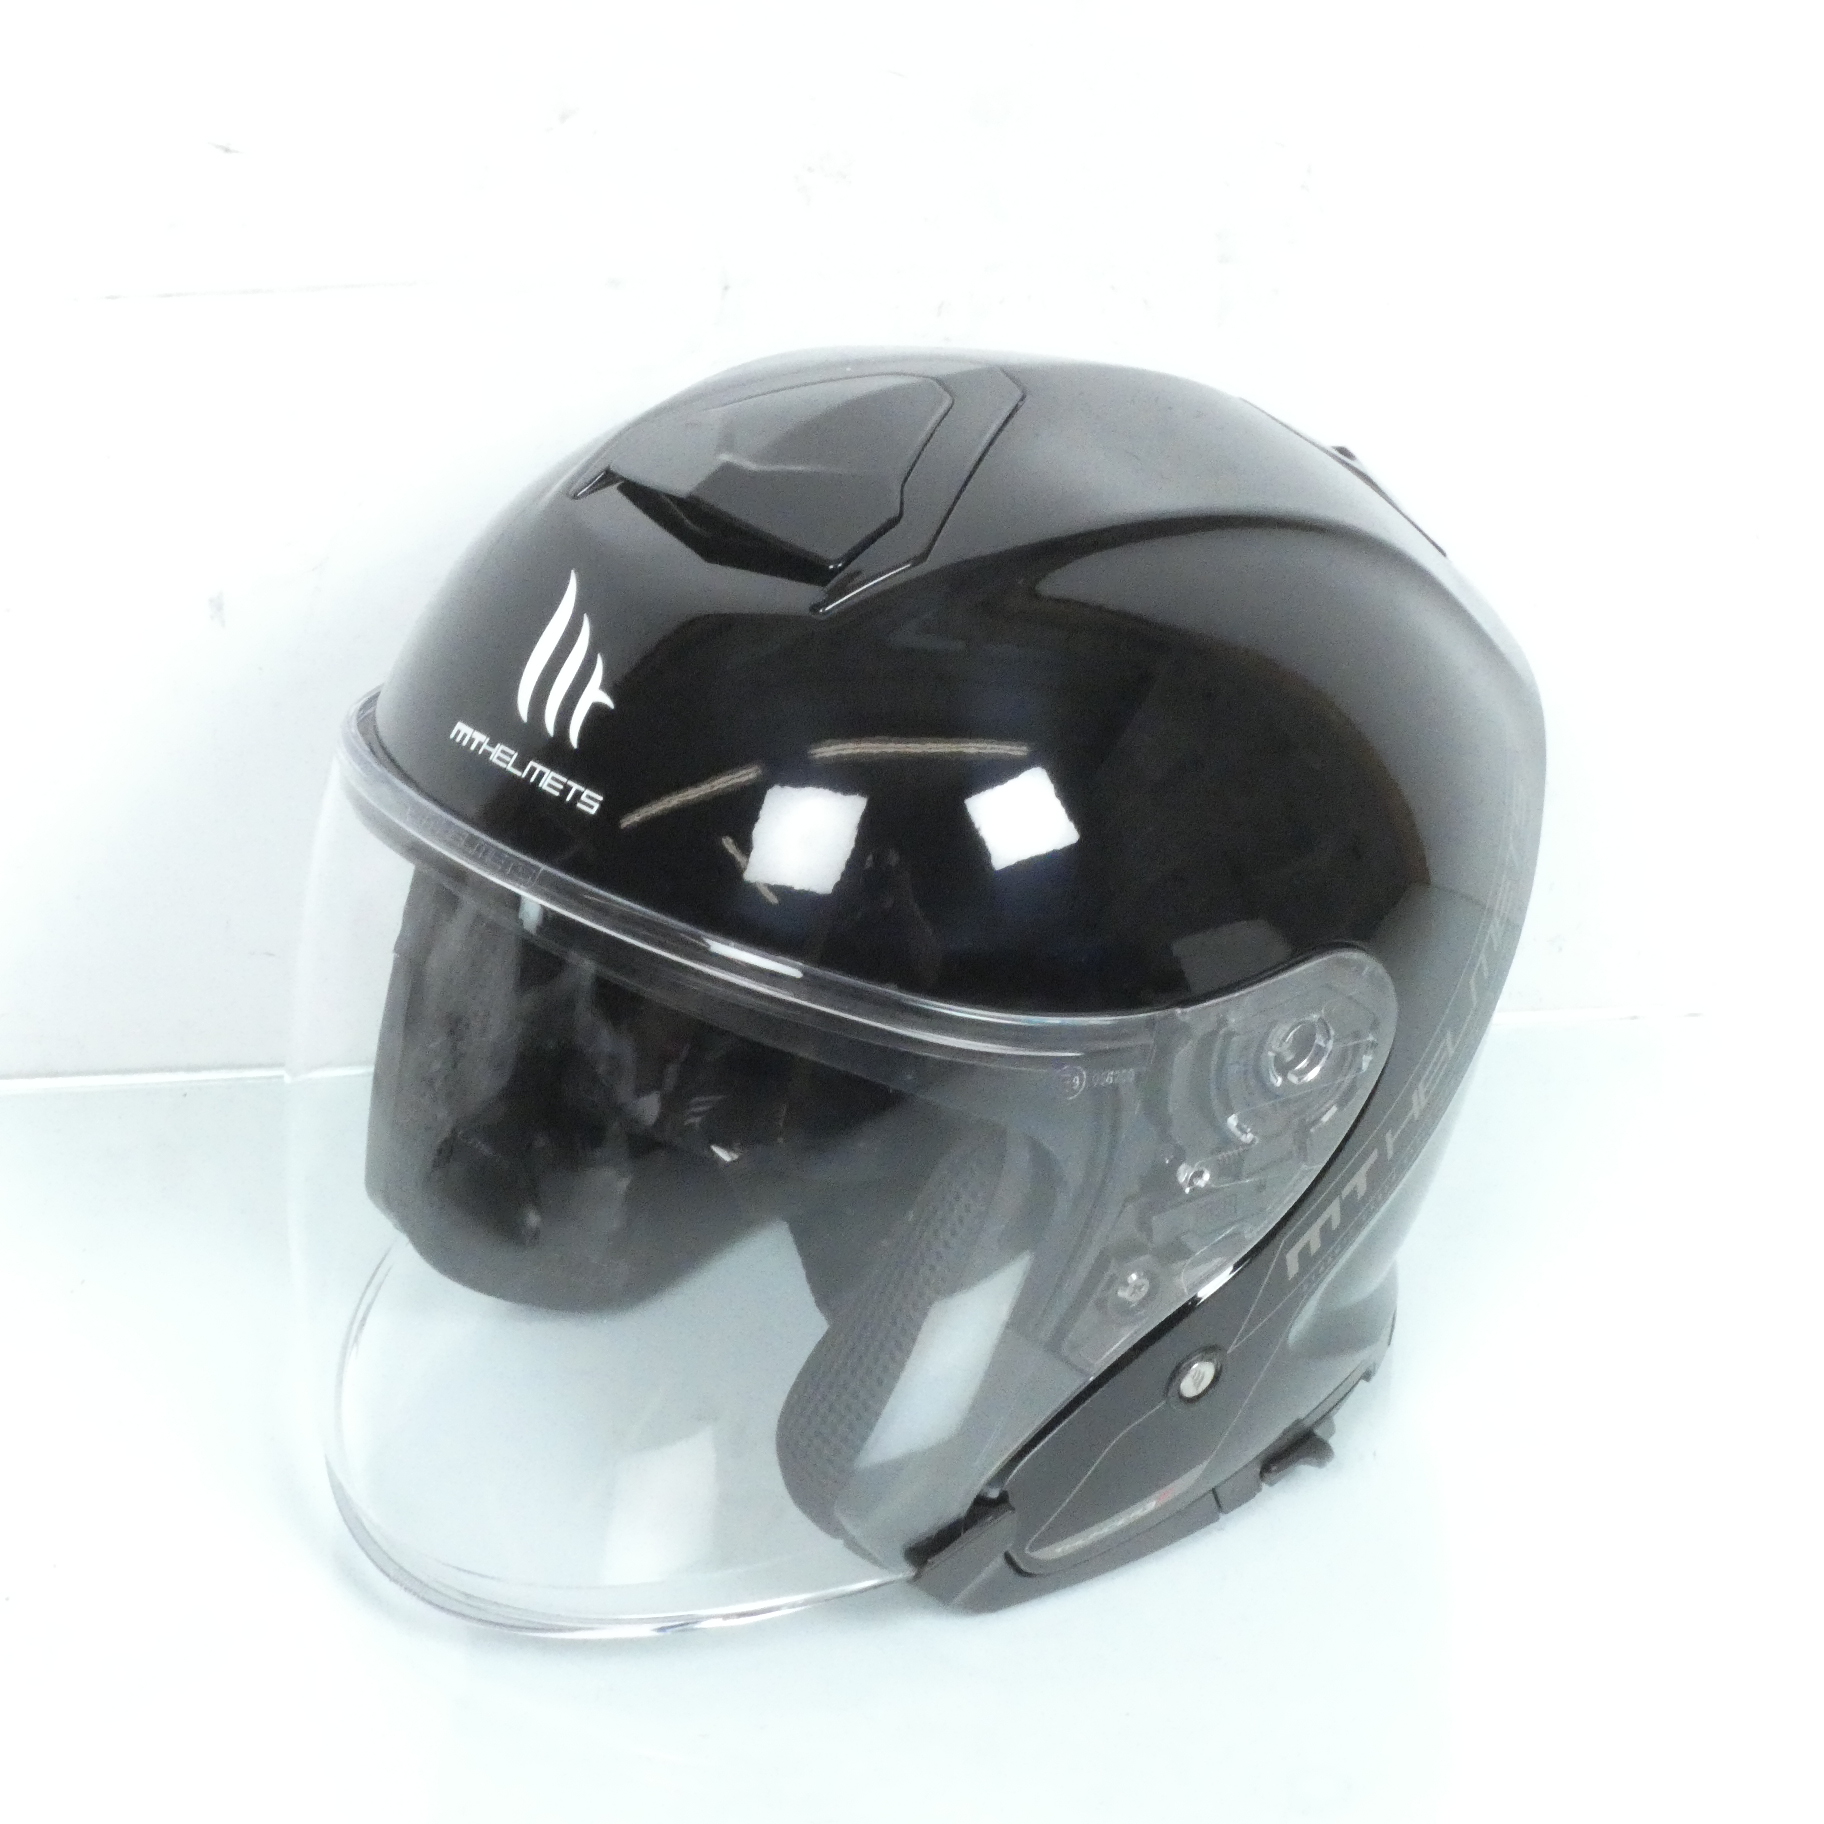 Casque jet pour homme femme MT Helmets Taille XXXL Thunder 3 SV noir 65 à 66cm